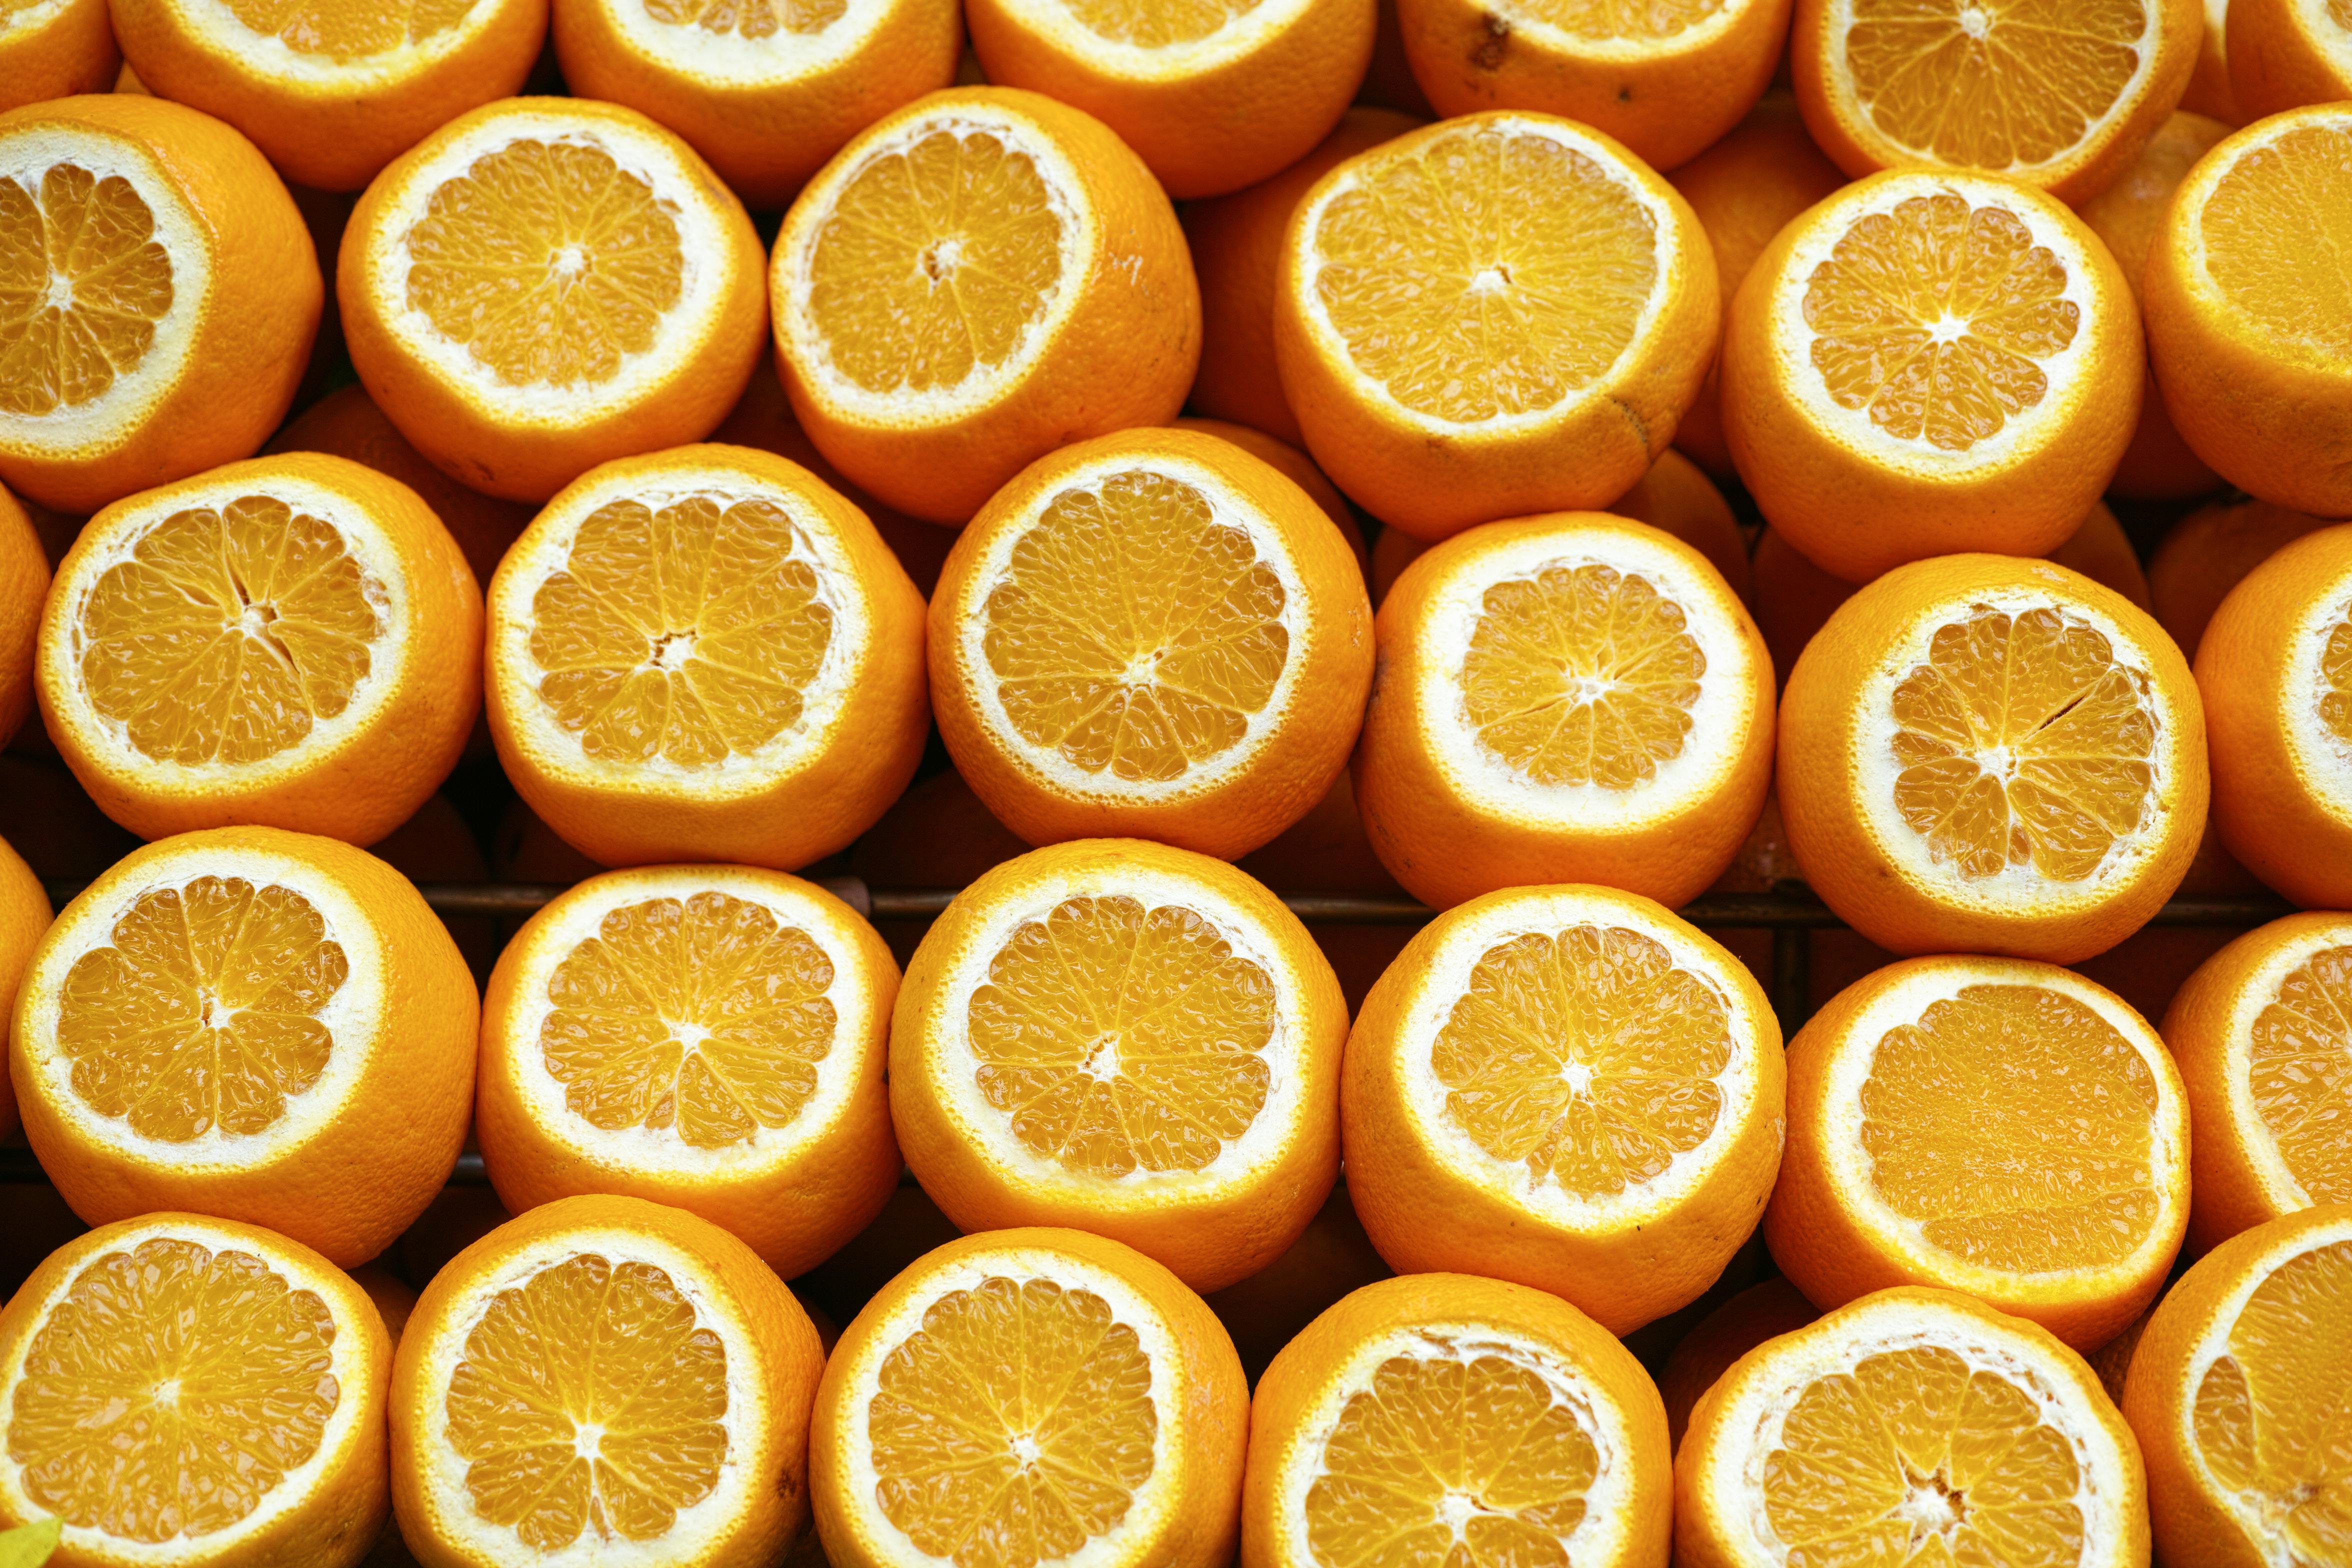 orange fruit photography